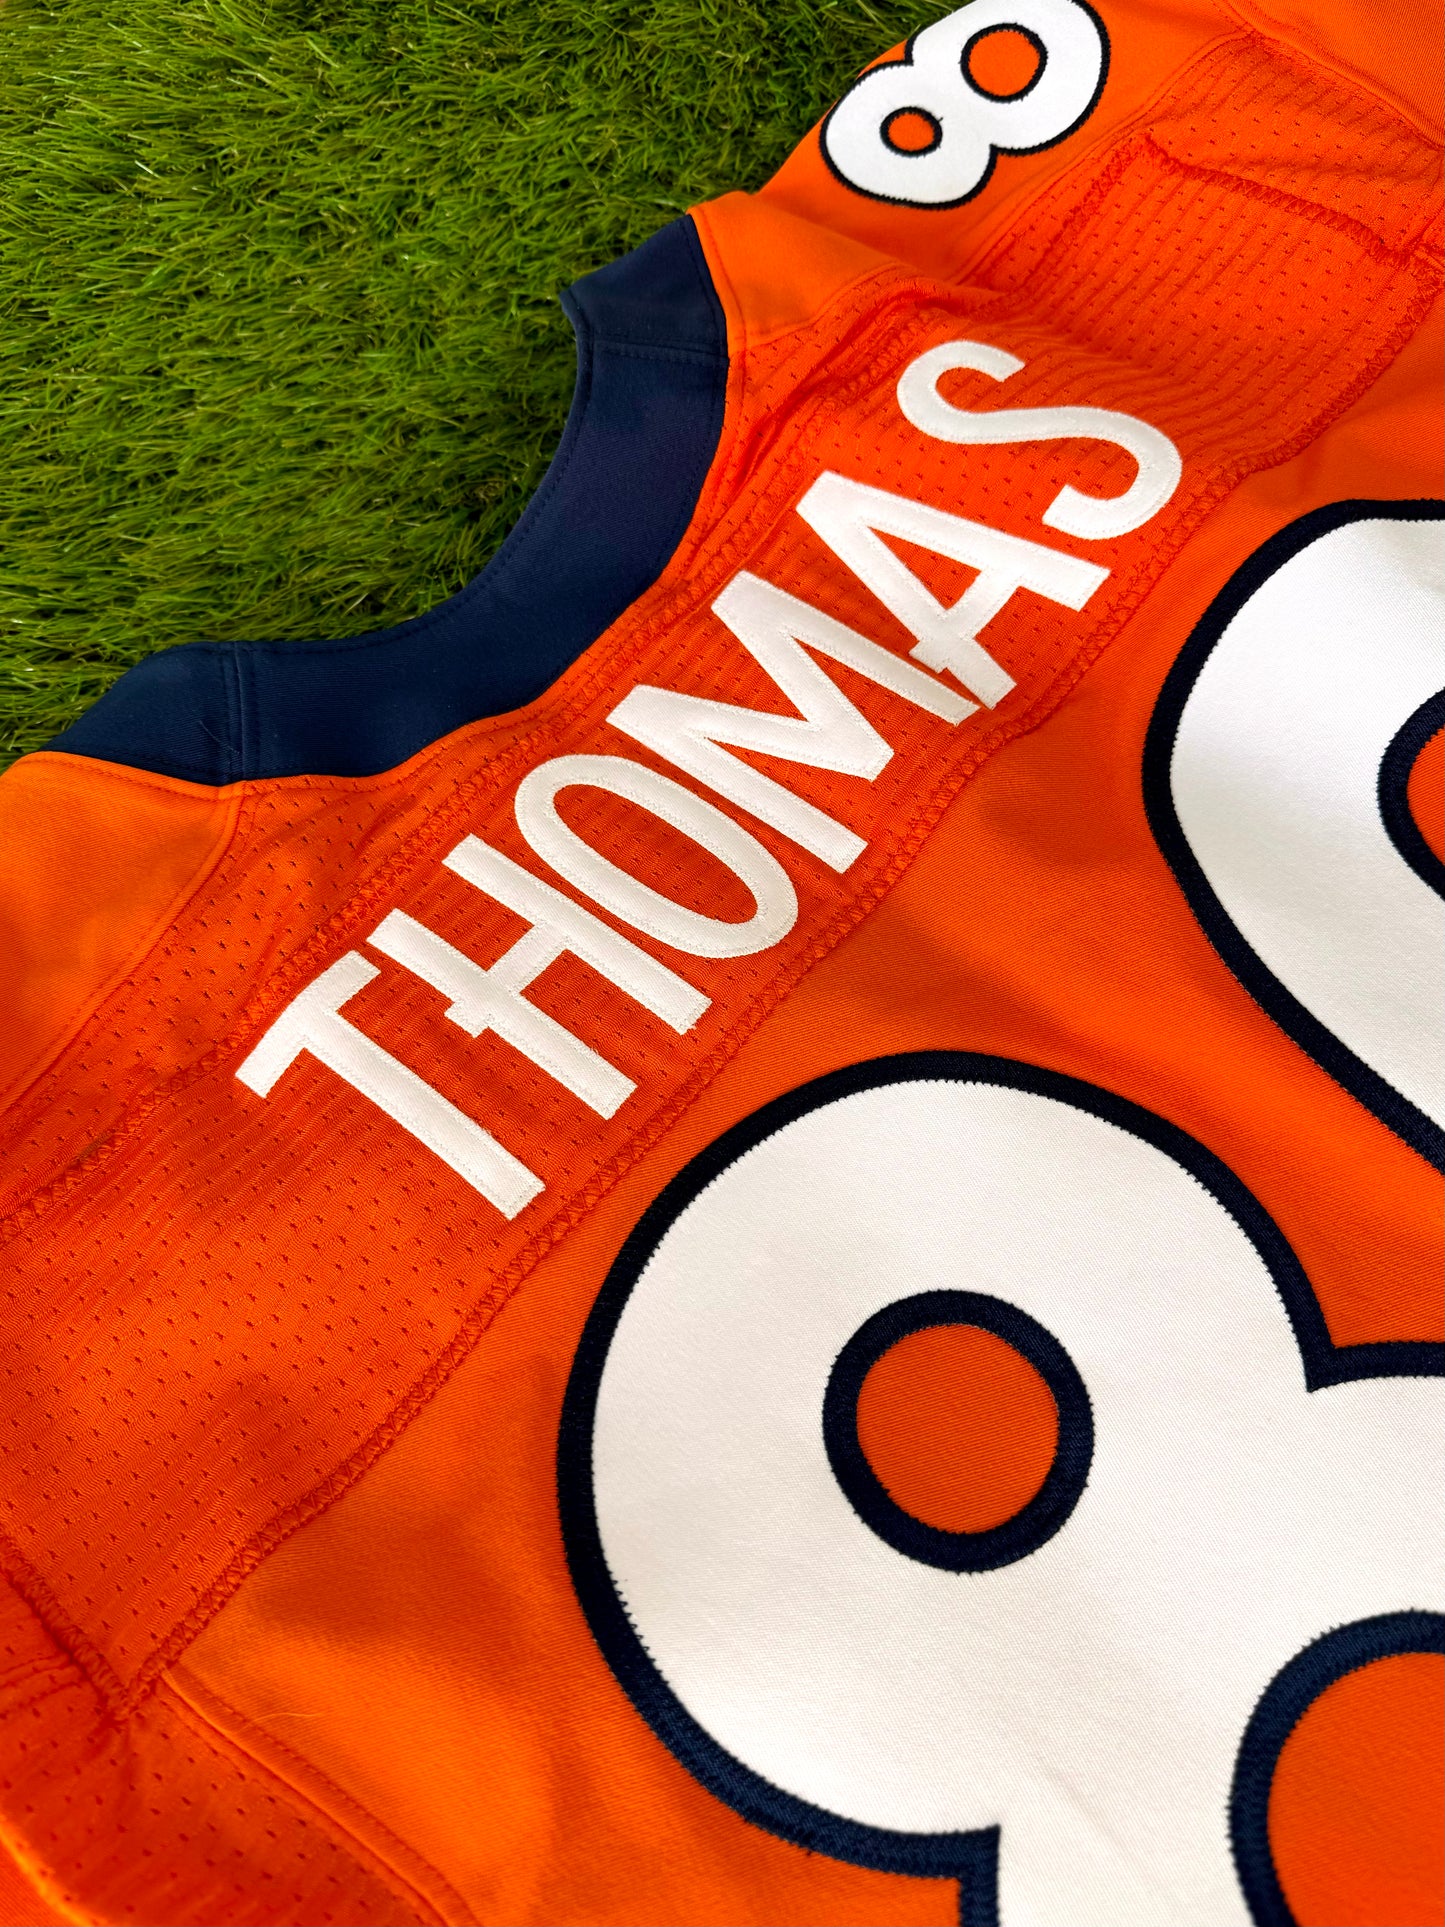 Denver Broncos Julius Thomas 2014 Game Worn NFL Football Jersey (44/Large)